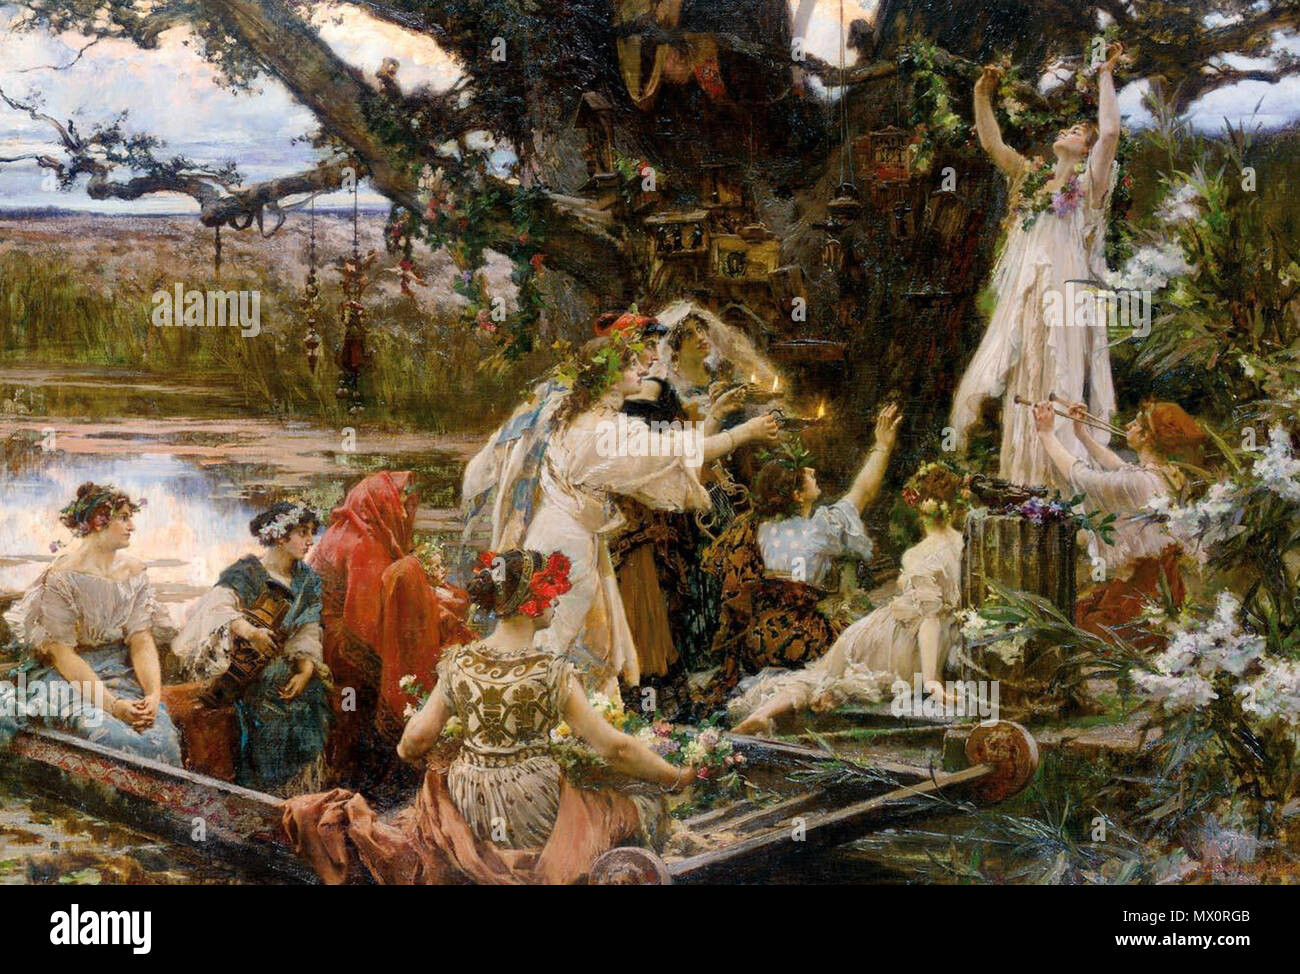 500 PRADILLA - Bajo el árbol consagrado a Ceres (Colección particular, 1903. Óleo sobre lienzo, 77,5 x 111 cm) Stock Photo